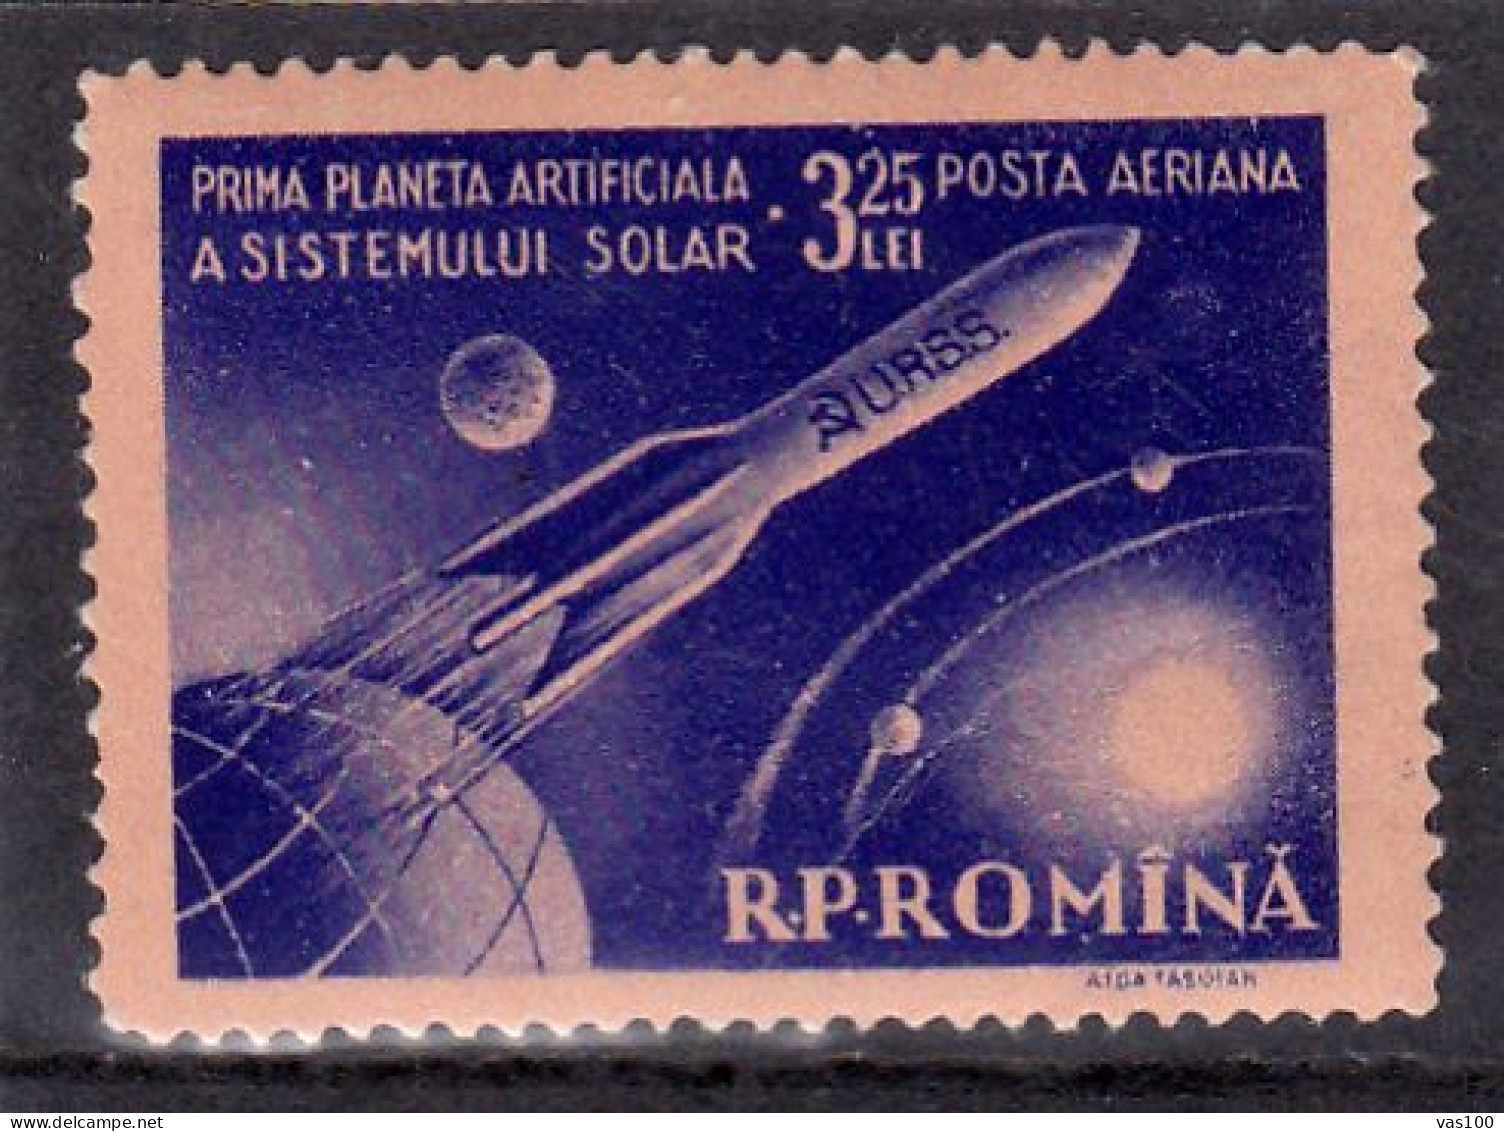 SPACE 1959 MI.Nr.1764 ,MNH ROMANIA - Nuovi